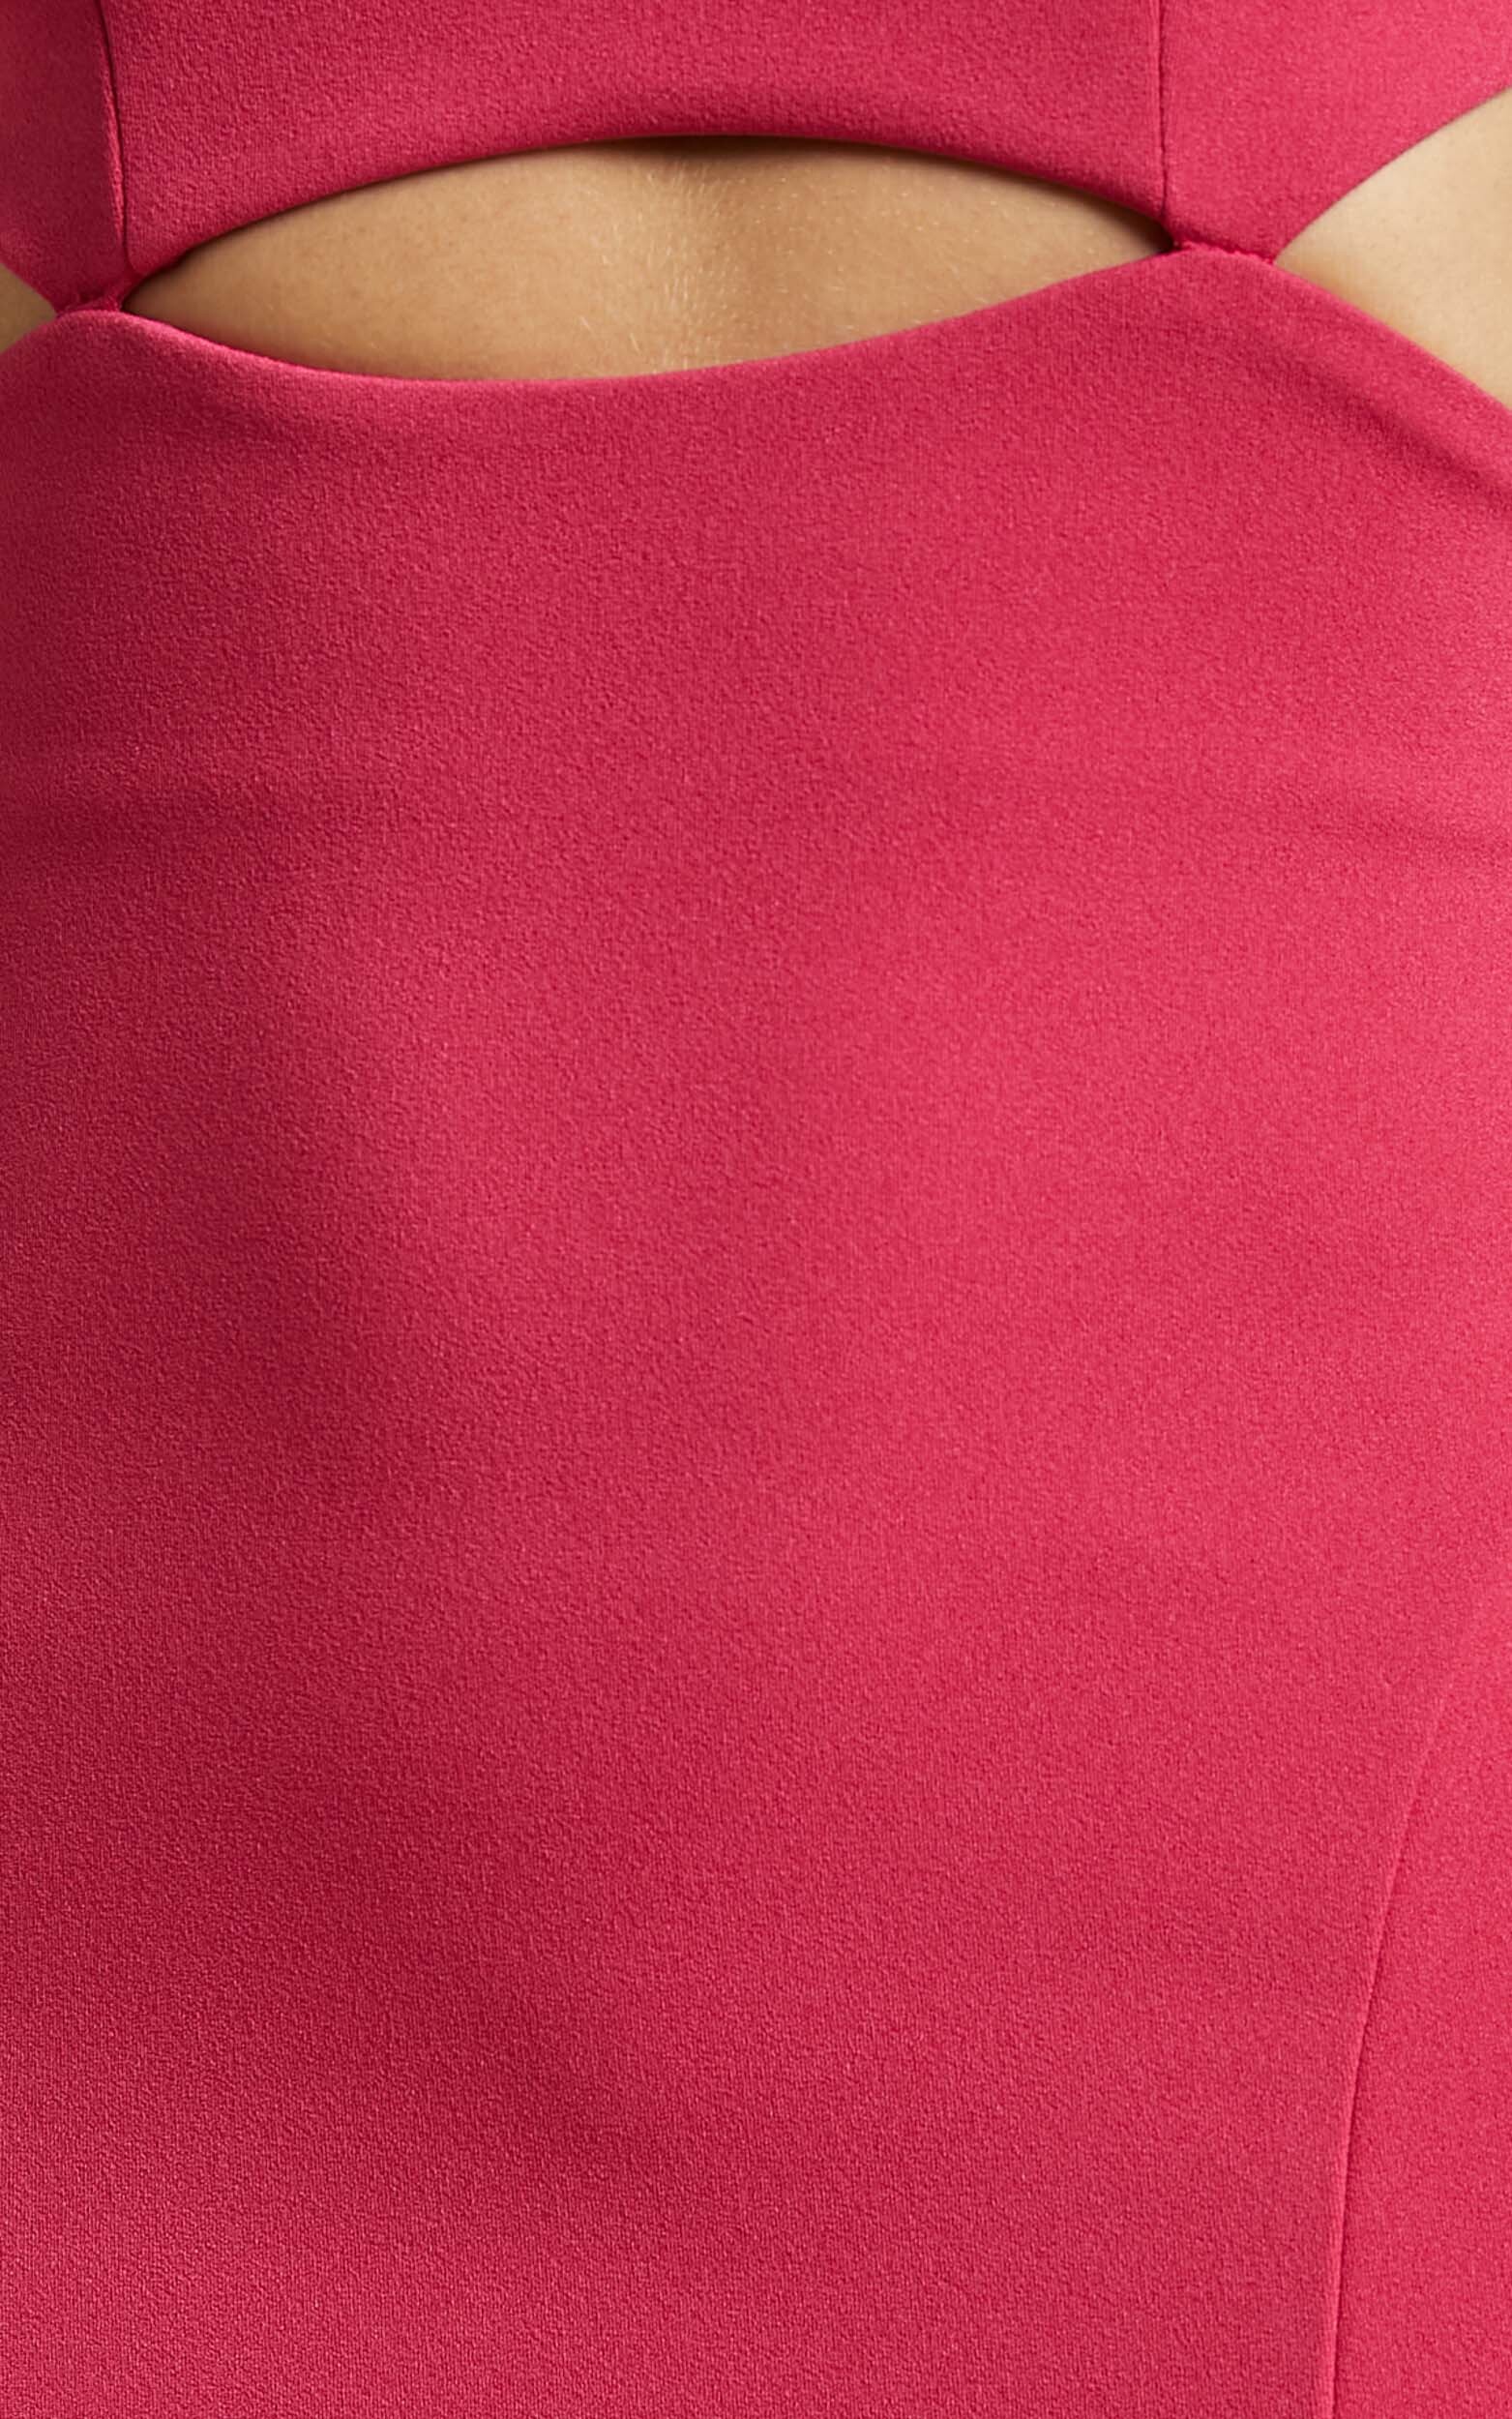 Monet Cut Out Underbust Dress in Hot Pink | Showpo